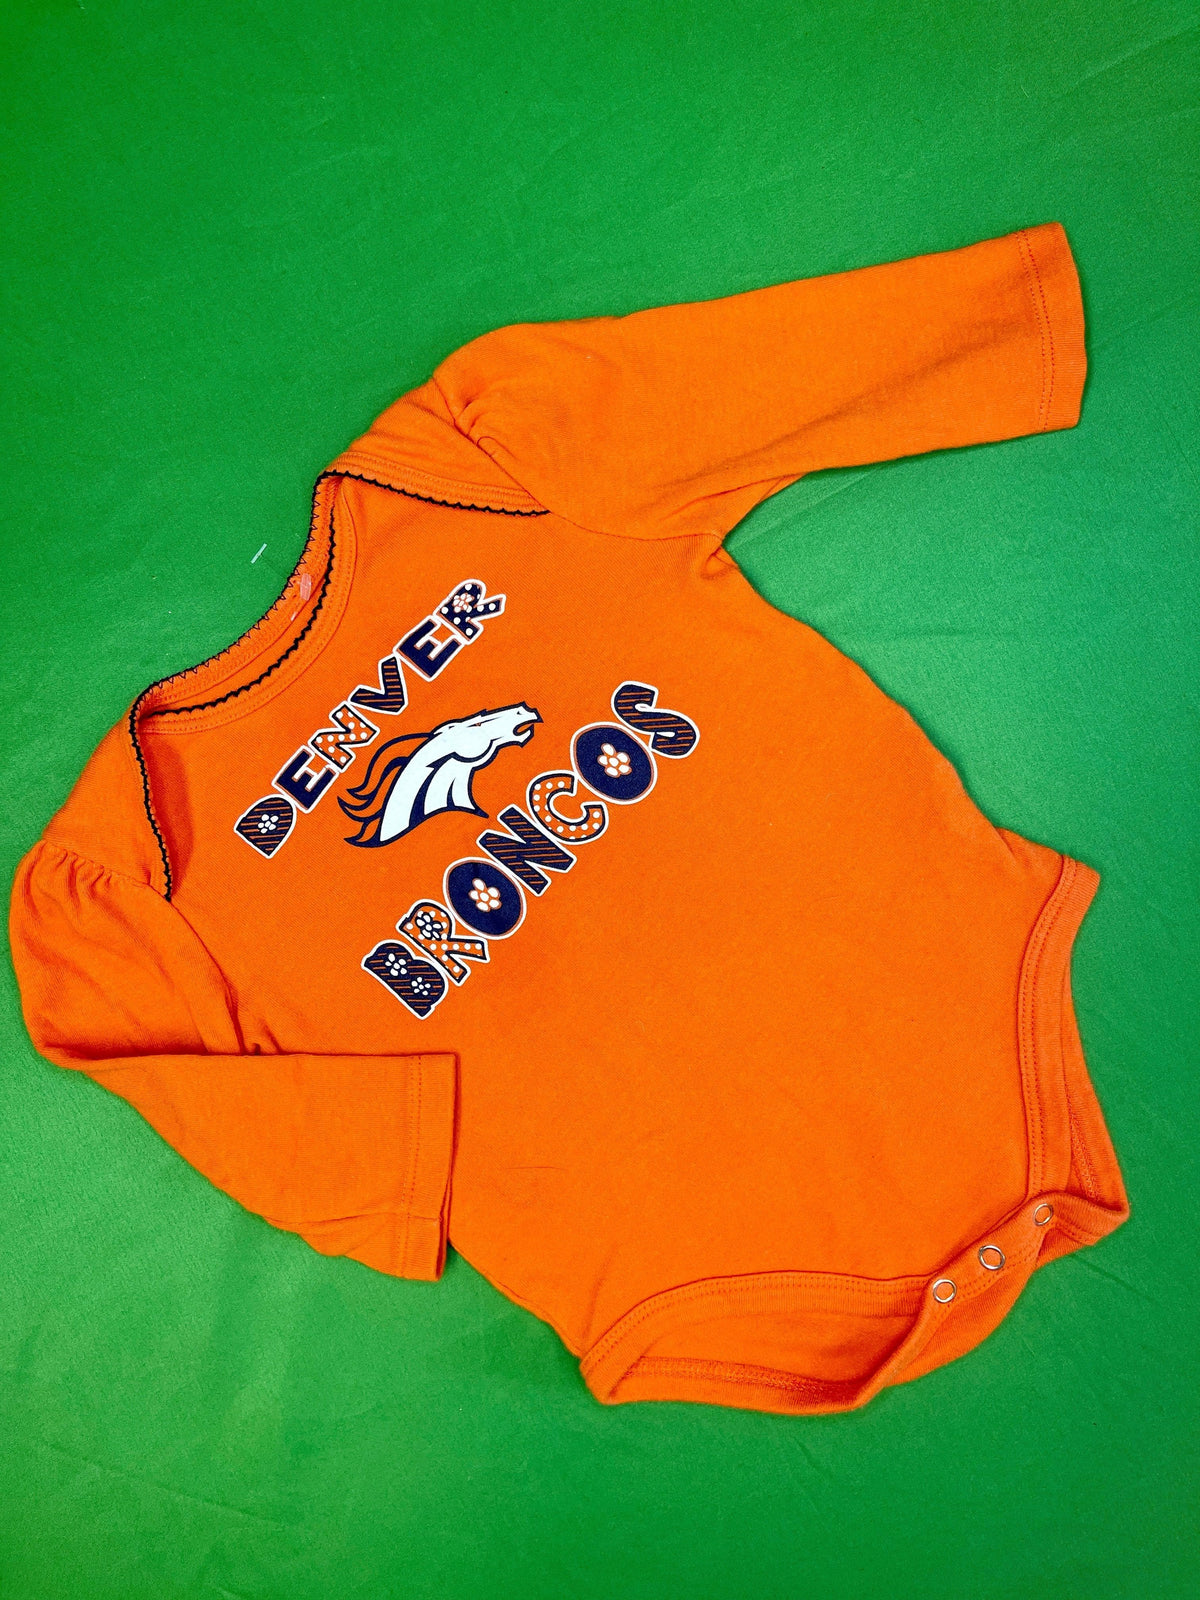 NFL Denver Broncos Orange Long Sleeve Bodysuit 18 months